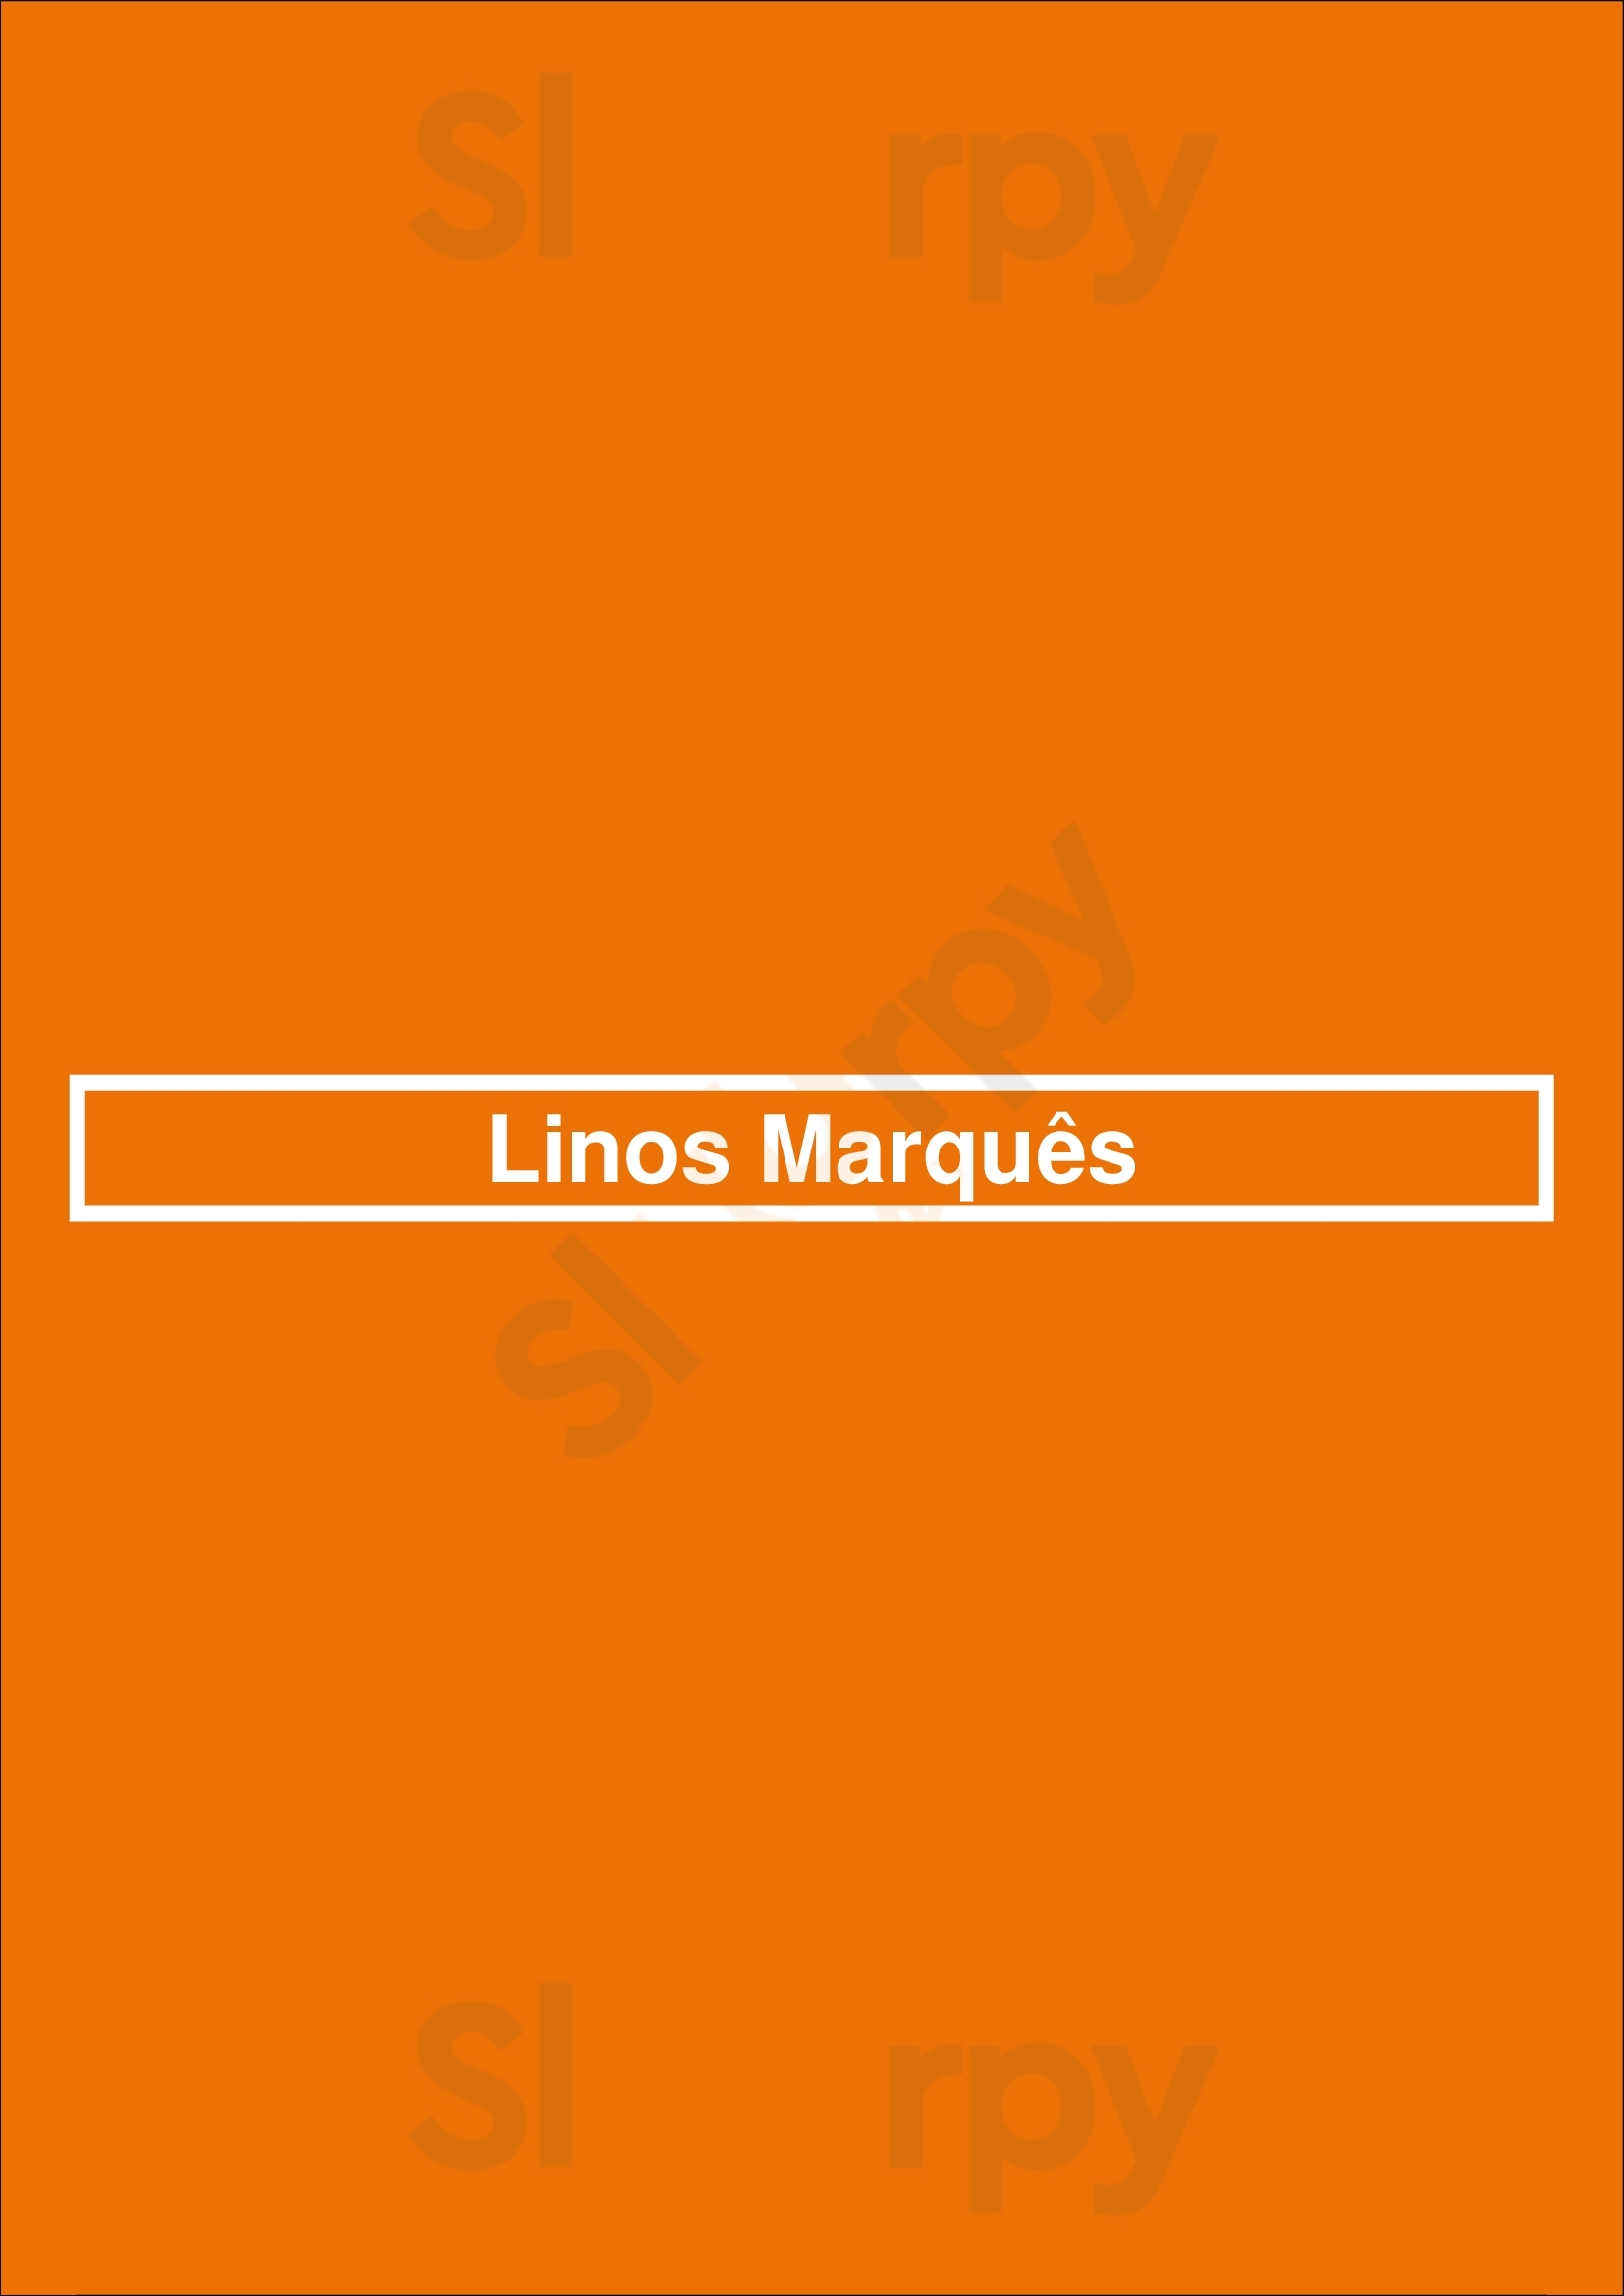 Linos Marquês Porto Menu - 1